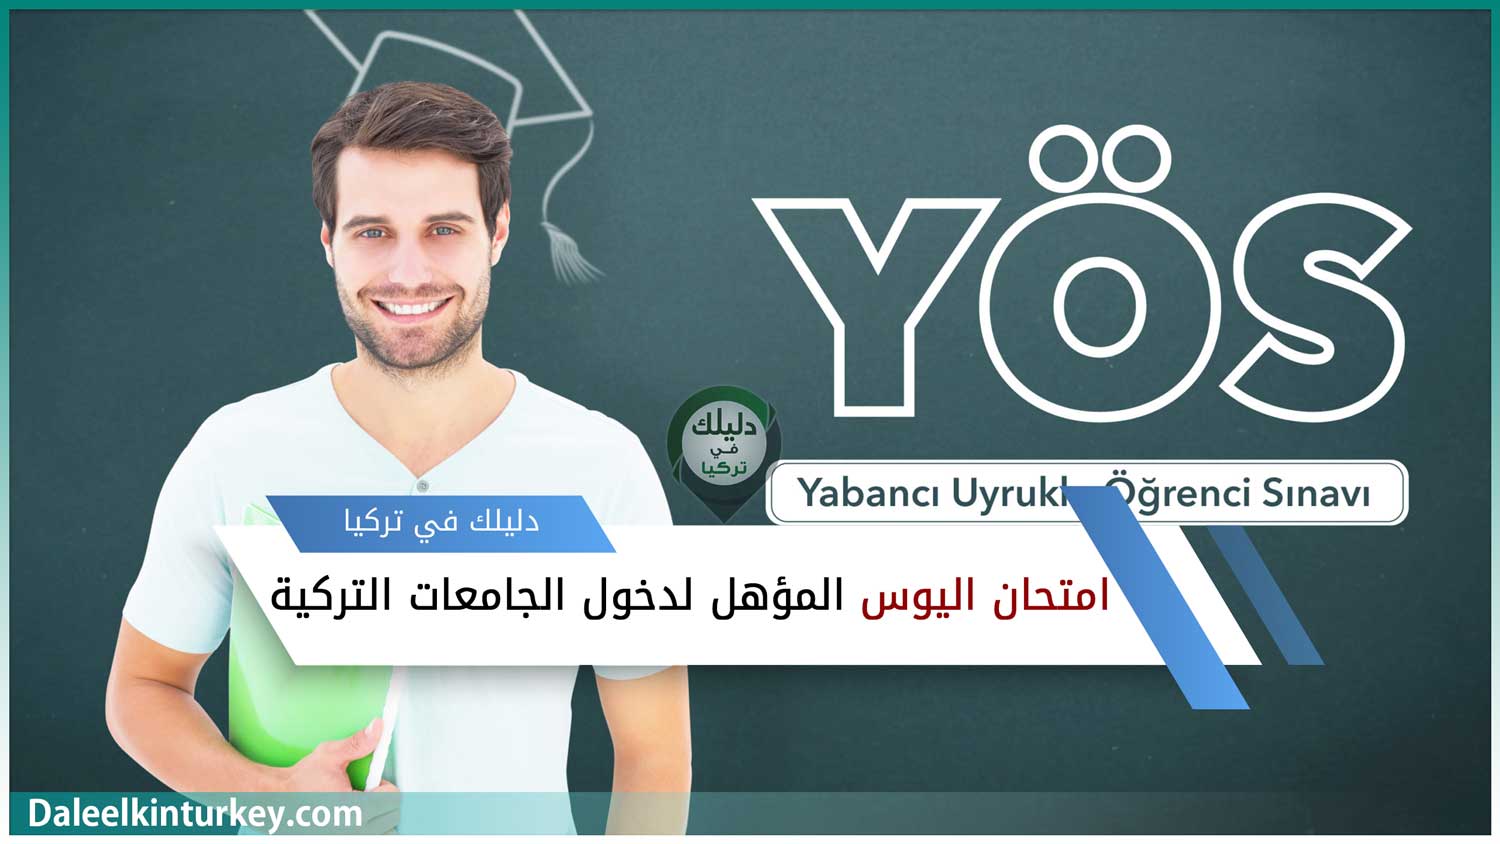 التعريف بامتحان اليوس YÖS المؤهل لدخول الجامعات التركية